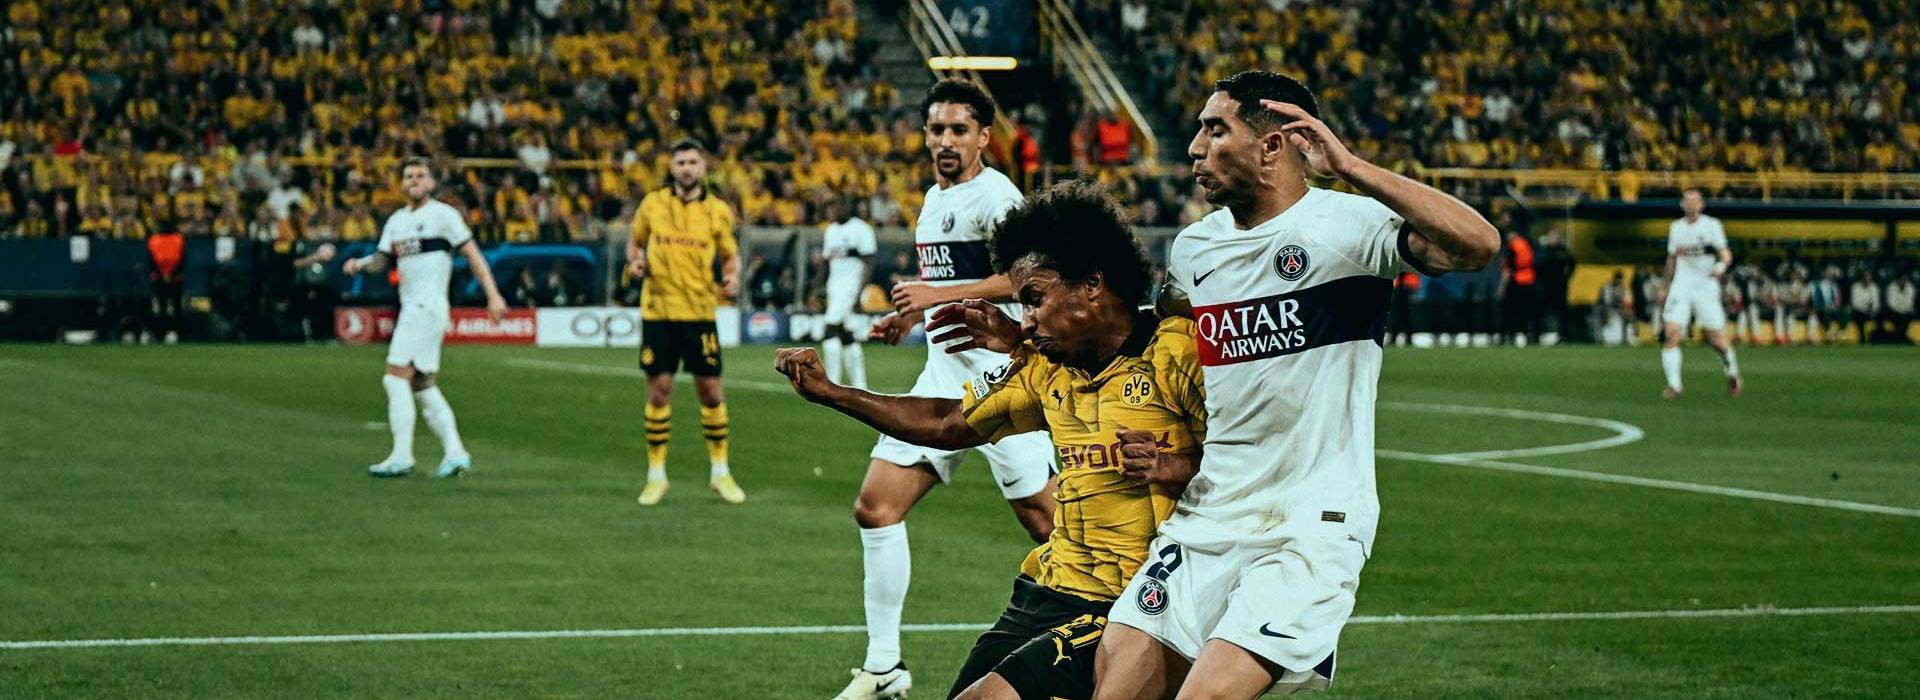 Borussia Dortmund celebrate 1-0 victory in first leg